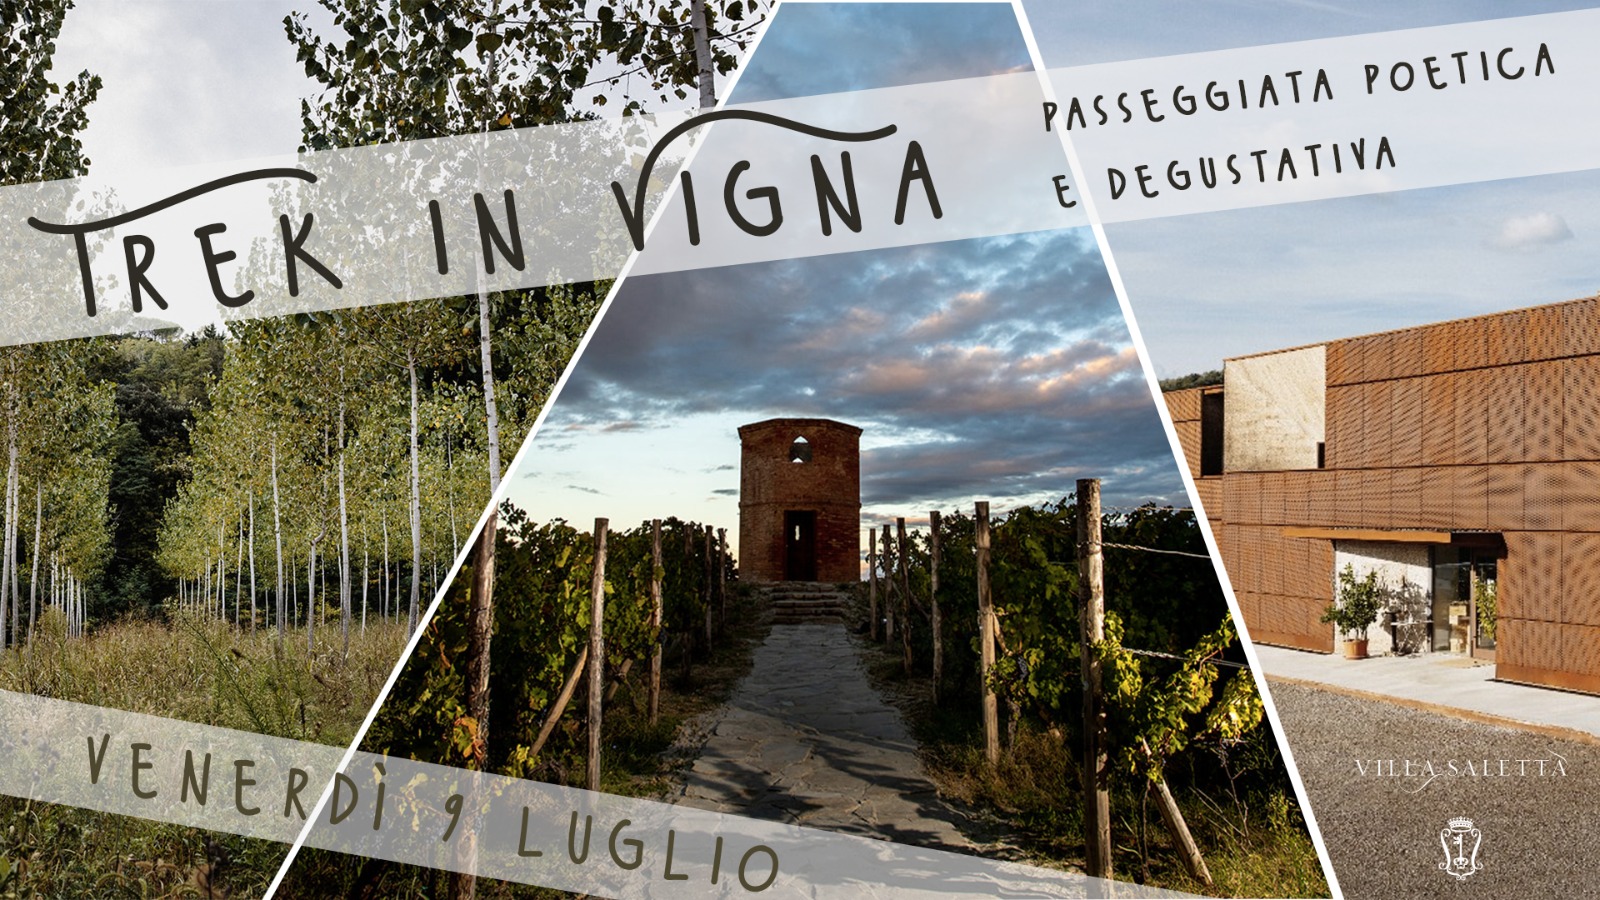 Trek in Vigna – Cammino Divino. Passeggiate poetiche e degustative